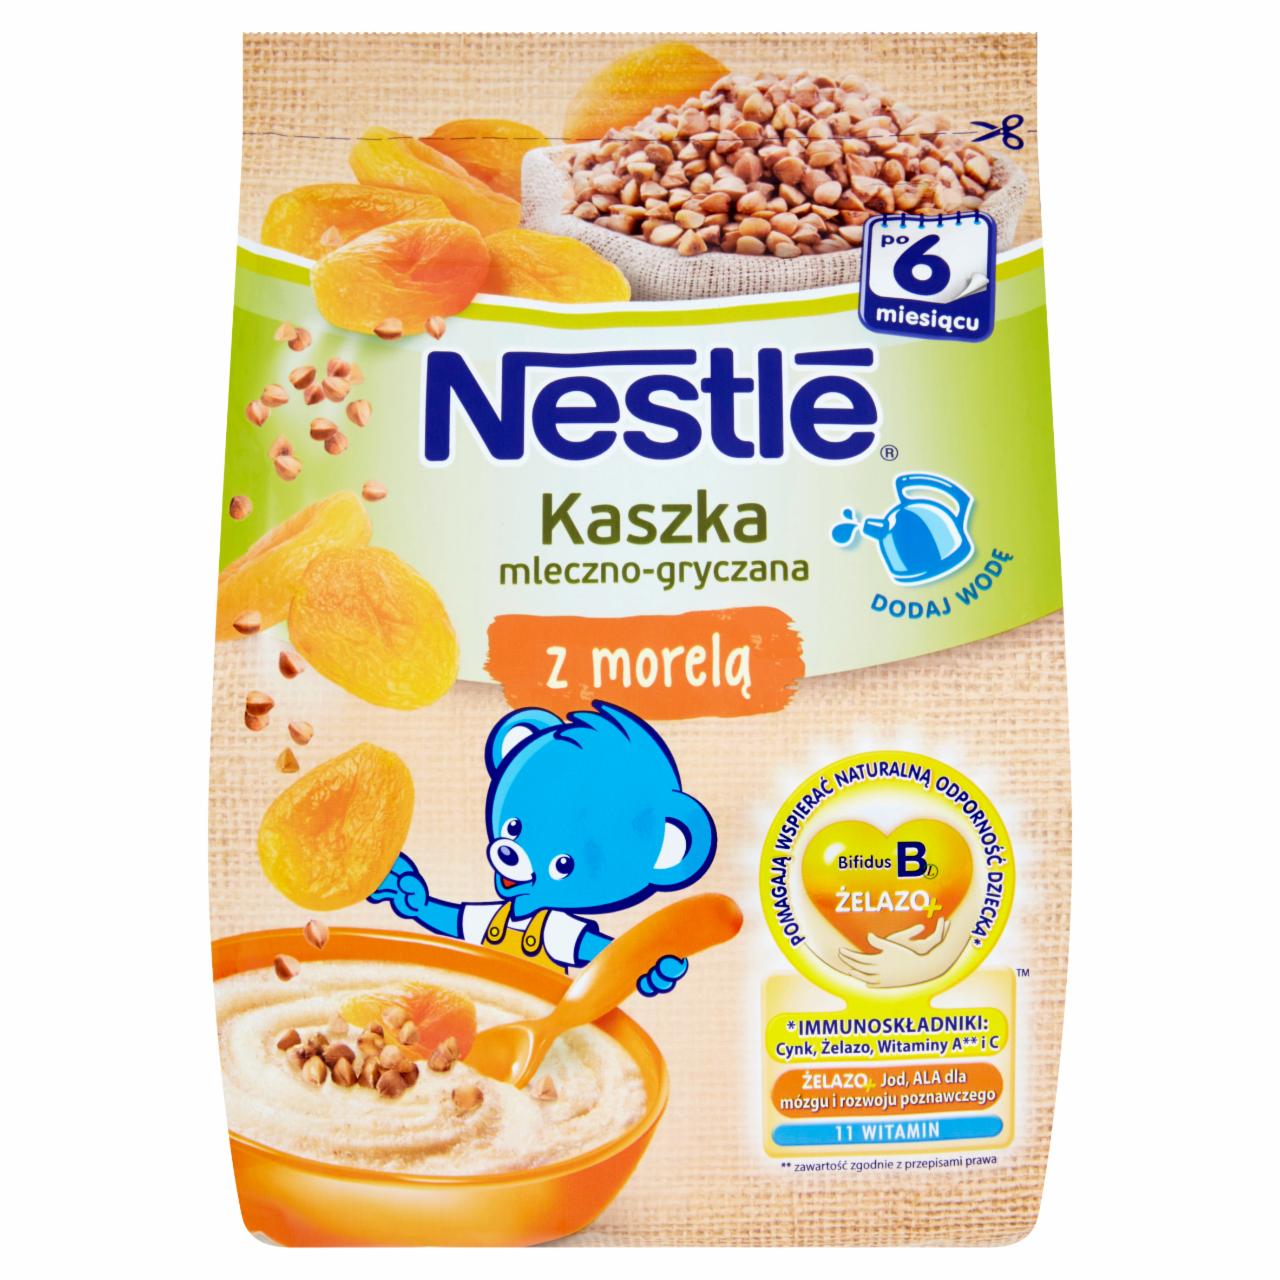 Zdjęcia - Nestlé Kaszka mleczno-gryczana z morelą po 6 miesiącu 180 g